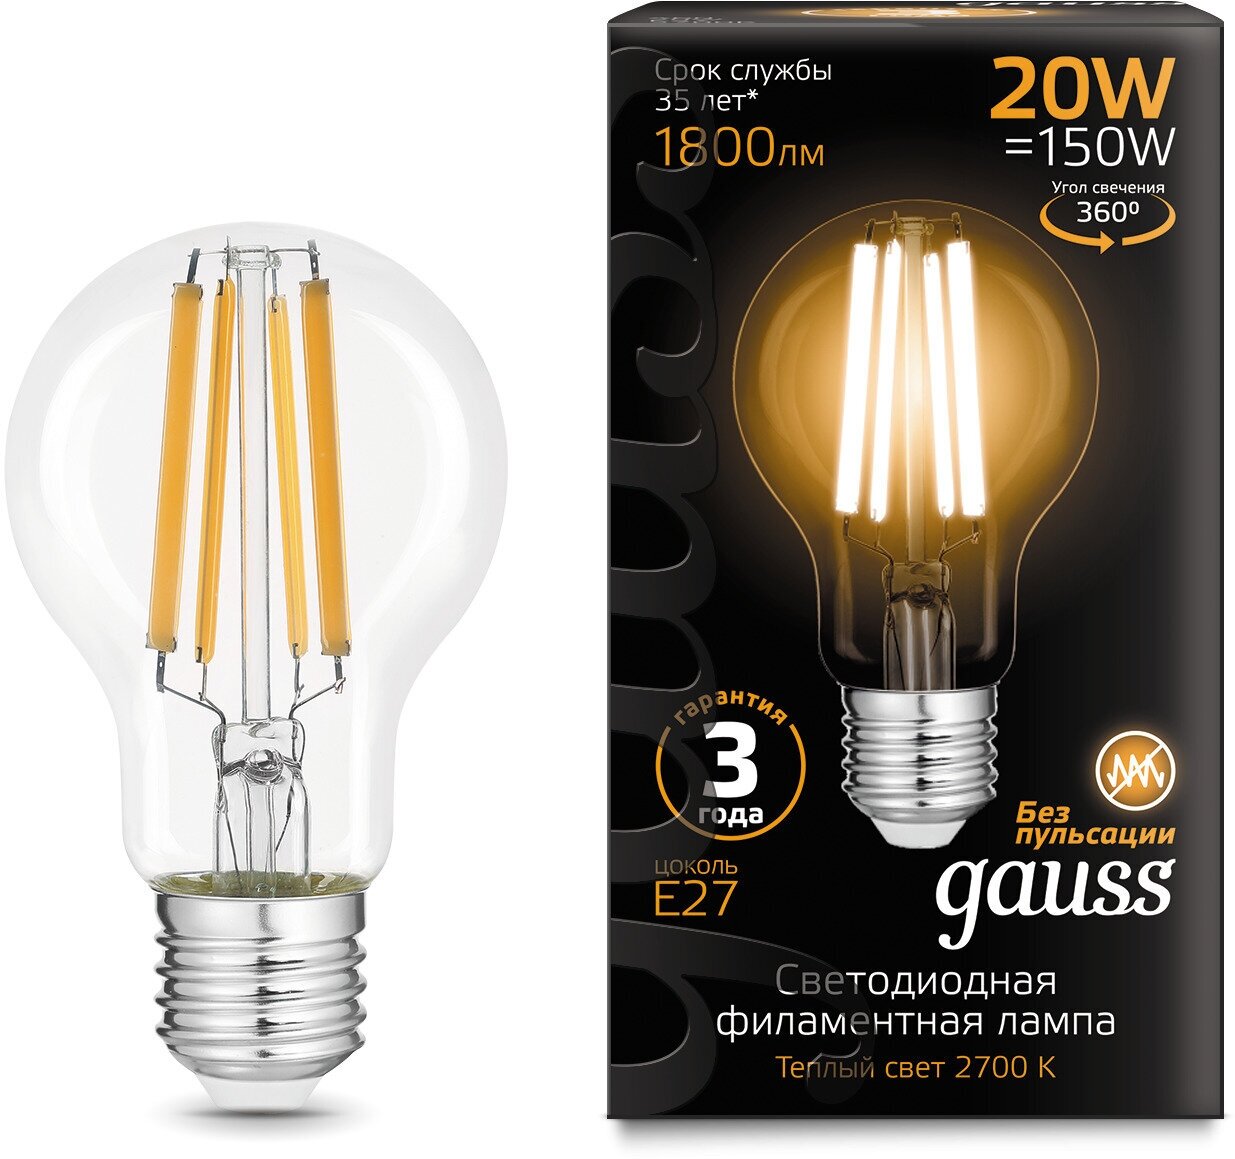 Лампочка светодиодная Е27 Груша 20Вт теплый свет 2700К 1800лм упаковка 10 штук Gauss Filament